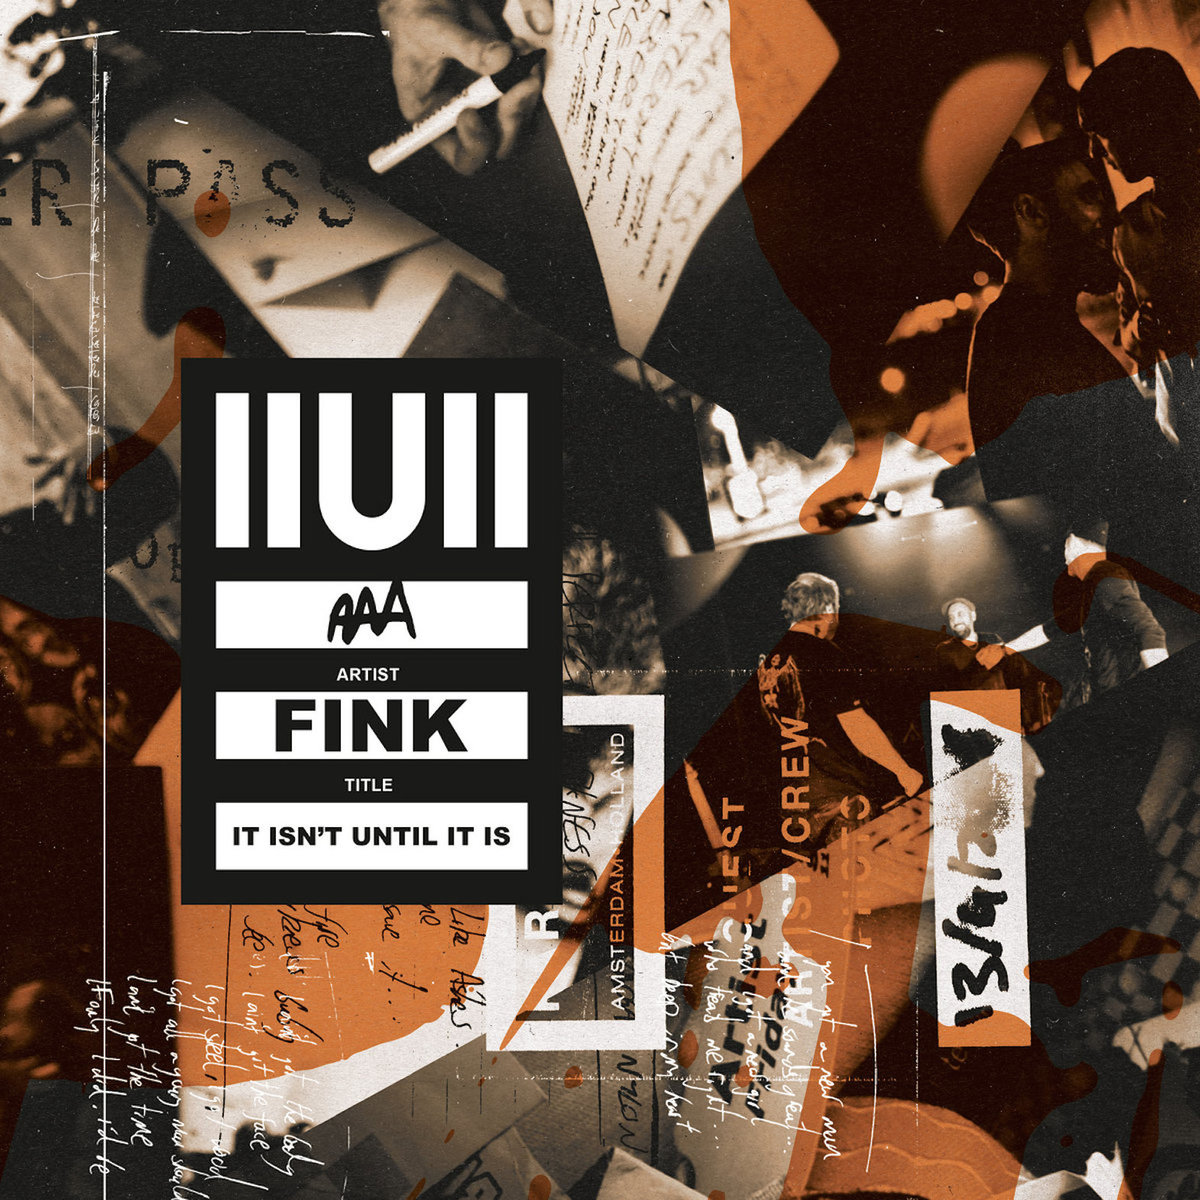 FINK – IIUII (It Isn’t Until It Is)